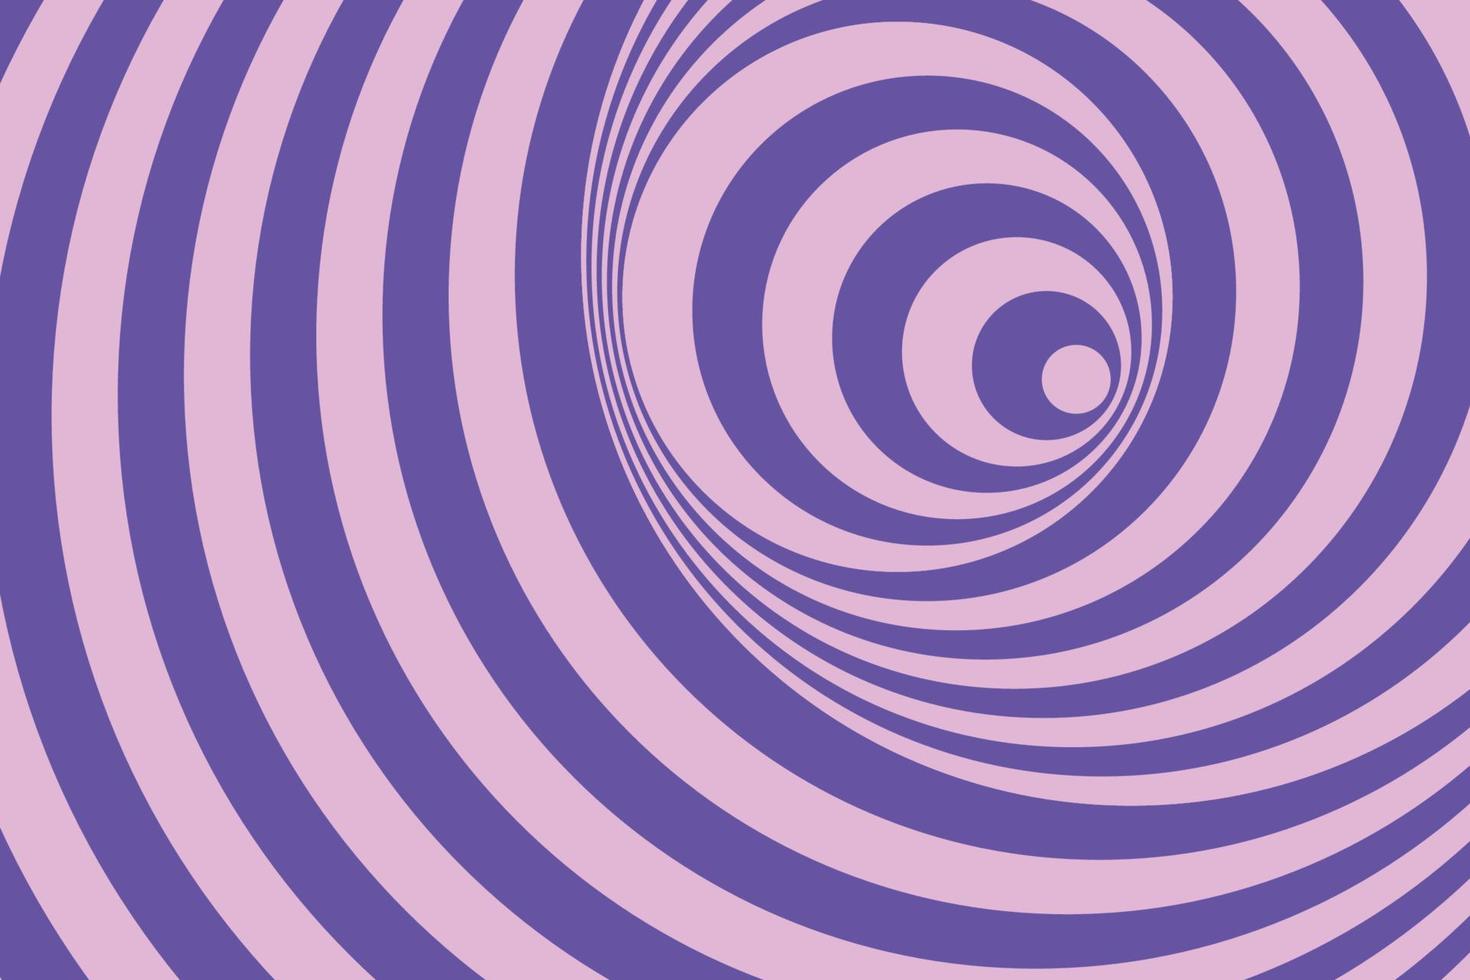 violett bicolor radiell hypnotiska spiraler dekorativ bakgrund i abstrakt stil vektor